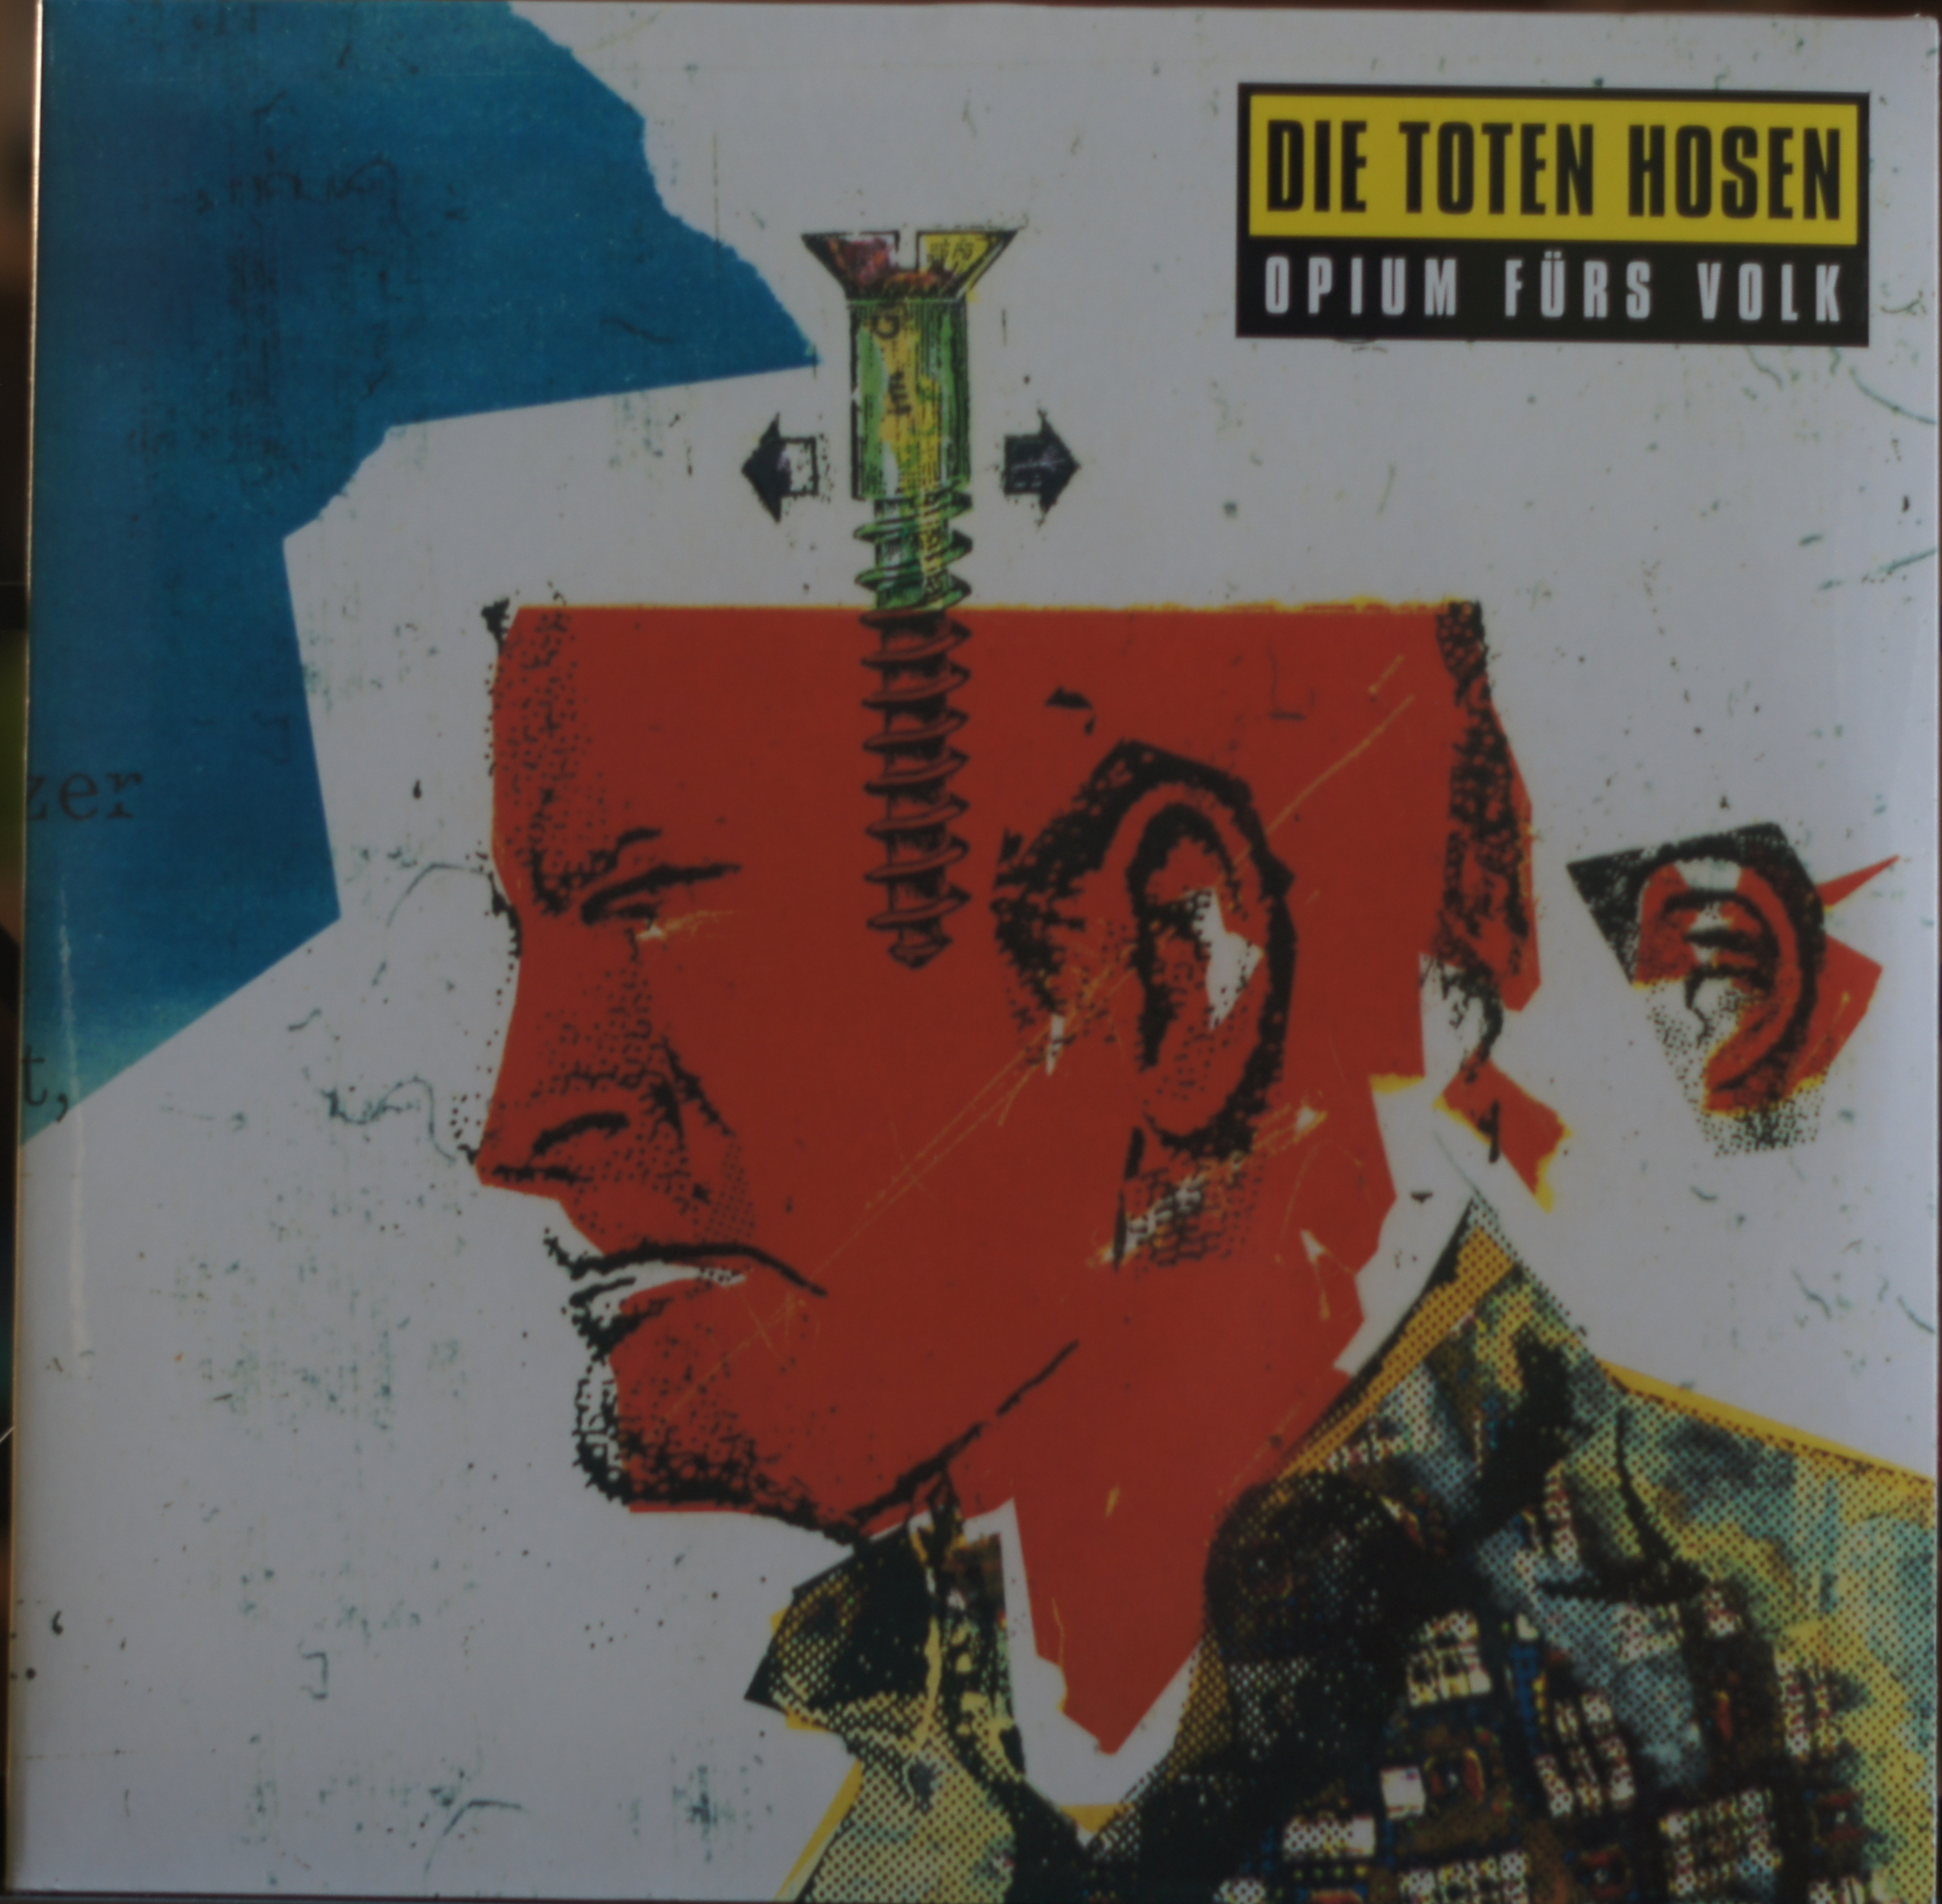 Die Toten Hosen - Opium fürs Volk (Vinyl)